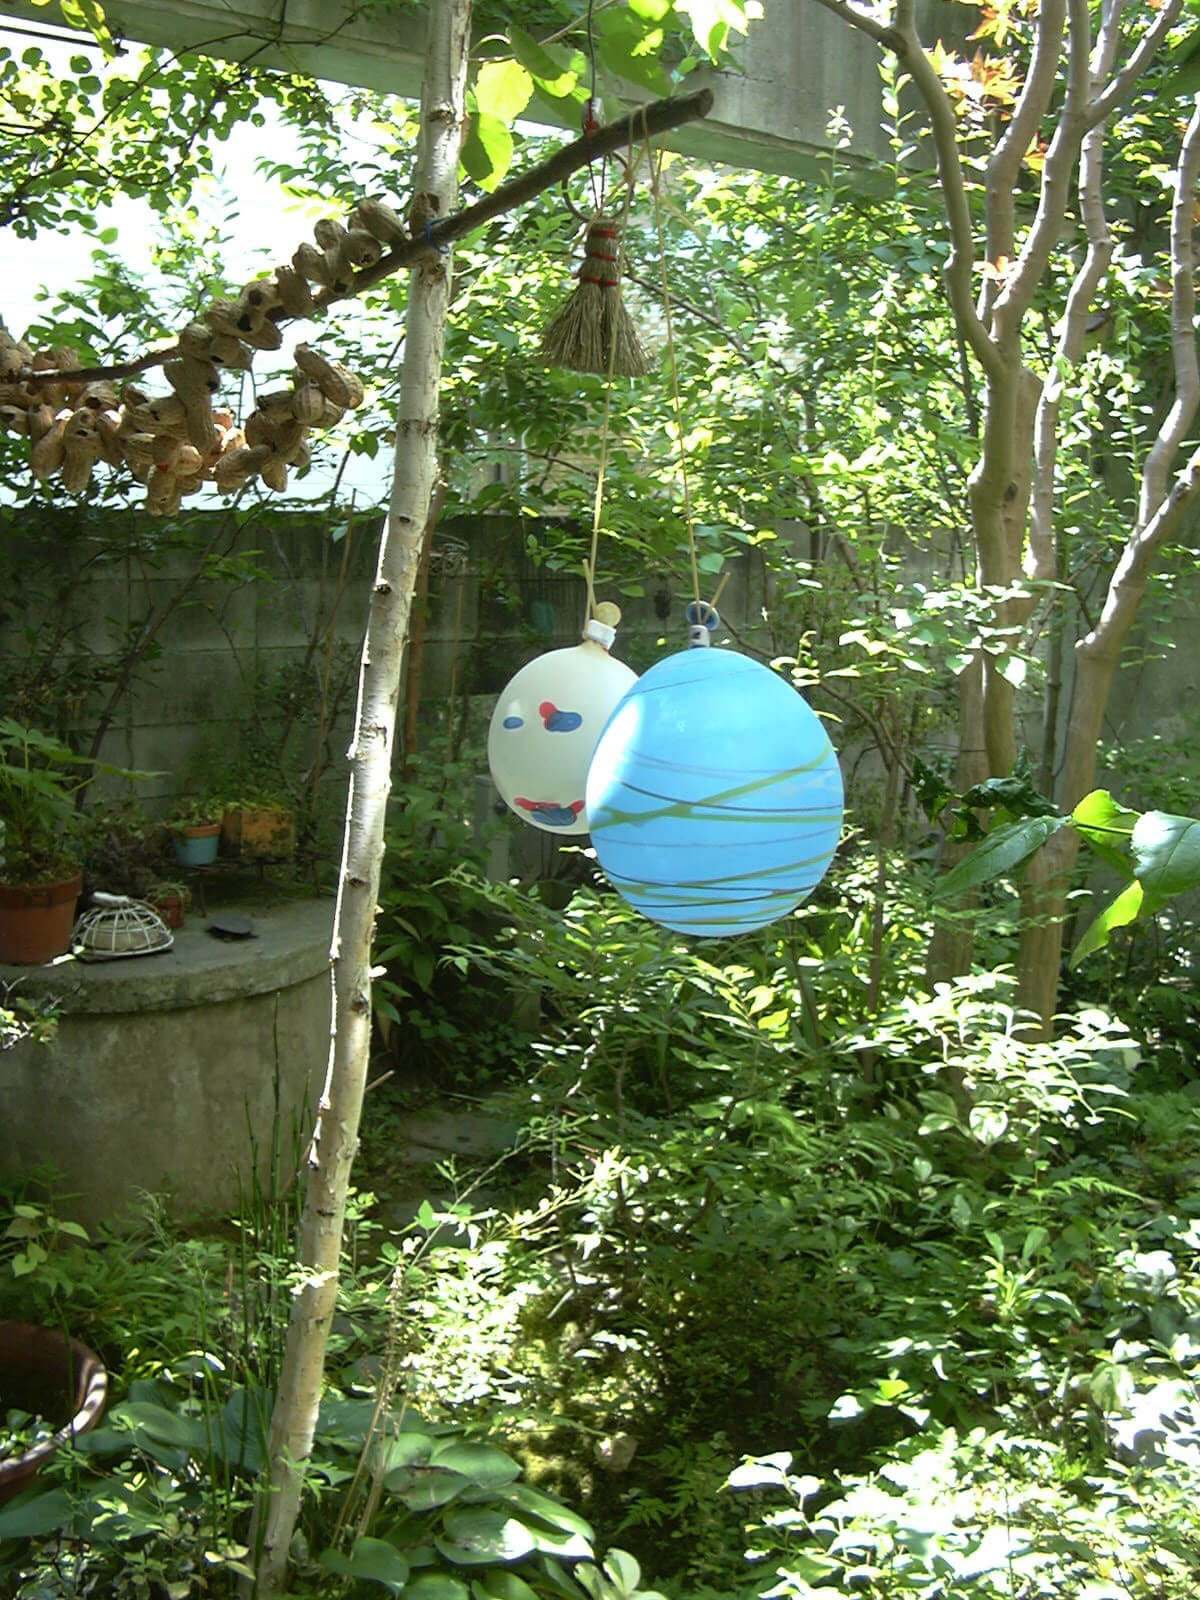 夏の町内会のお祭りでもらった水風船2つが庭に吊るされます